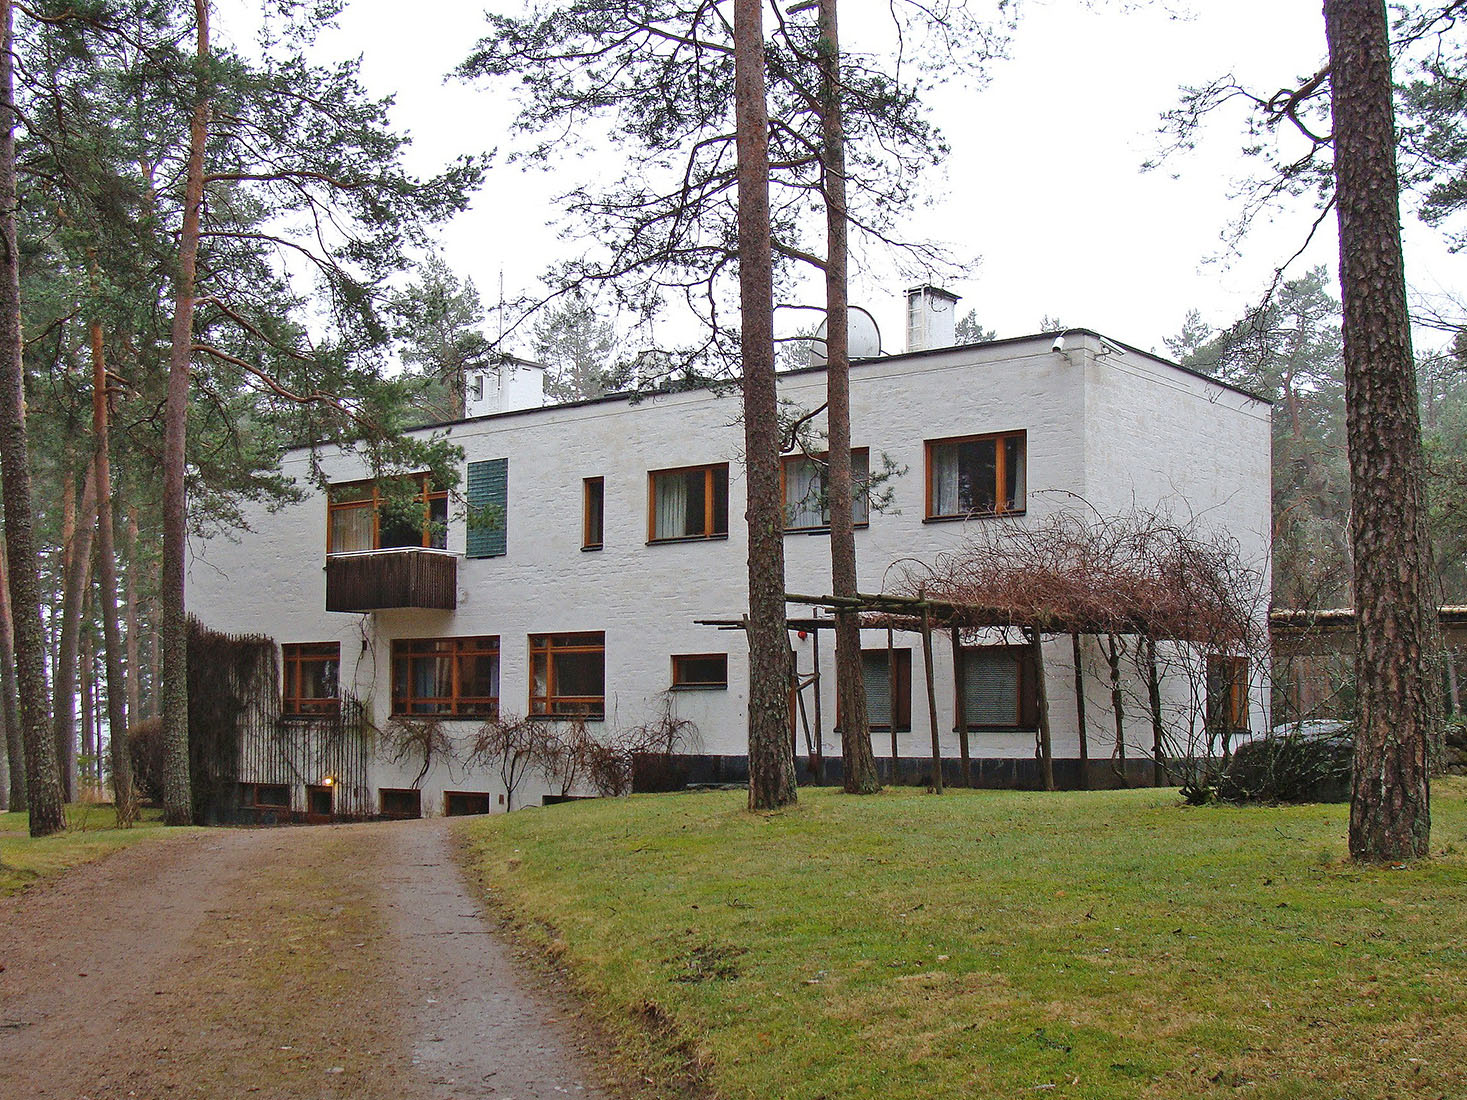 www.archipicture.eu - Alvar Aalto - Villa Mairea